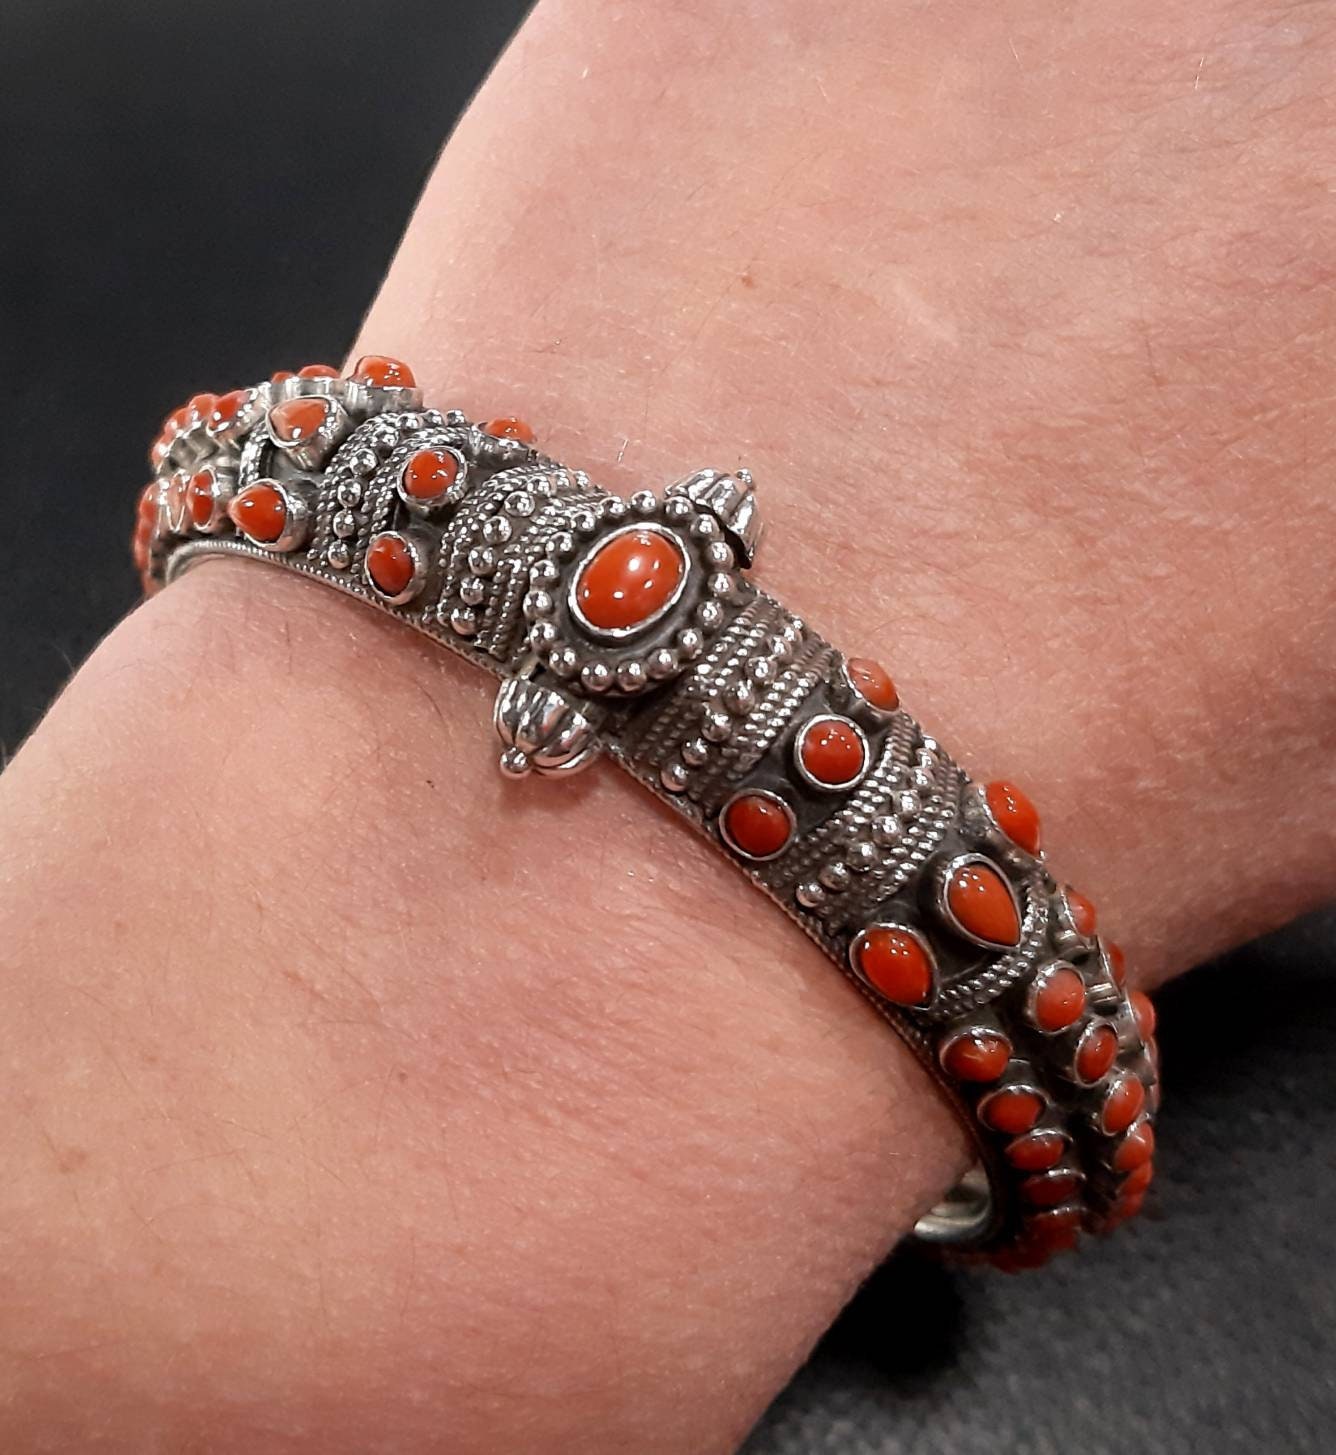 Red Coral Bracelet 925 Silver Cuff Bangle Adjustable - Etsy | Silver cuff  bangle, Unique cuff bracelets, Handmade bracelets